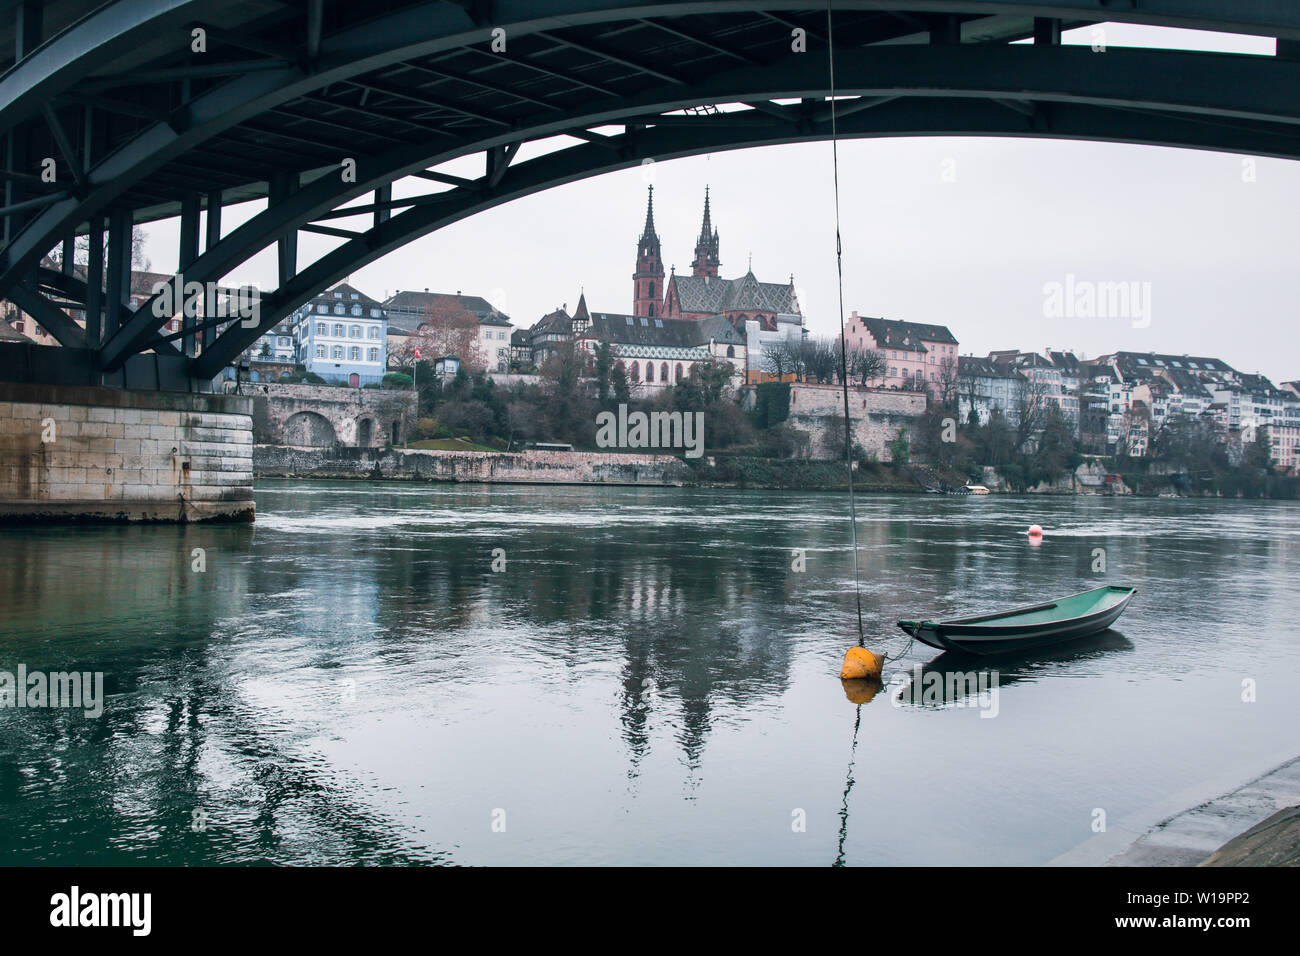 Boat in the River in Basel Stock Photo